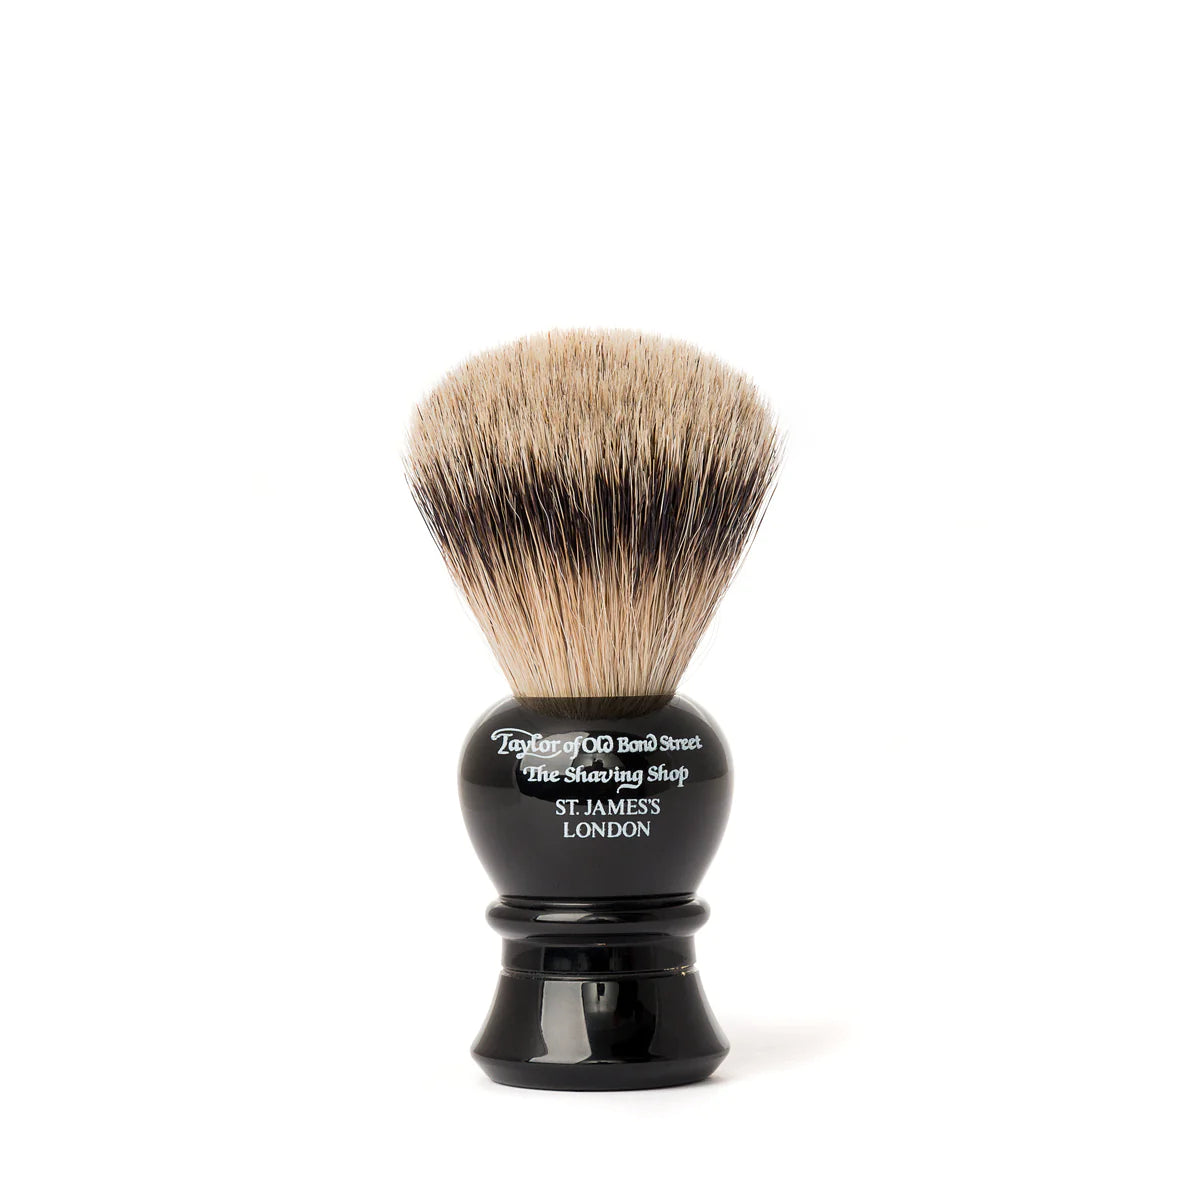 Taylor of Old Bond Street Traditional Super Badger Shaving Brush - medium, black